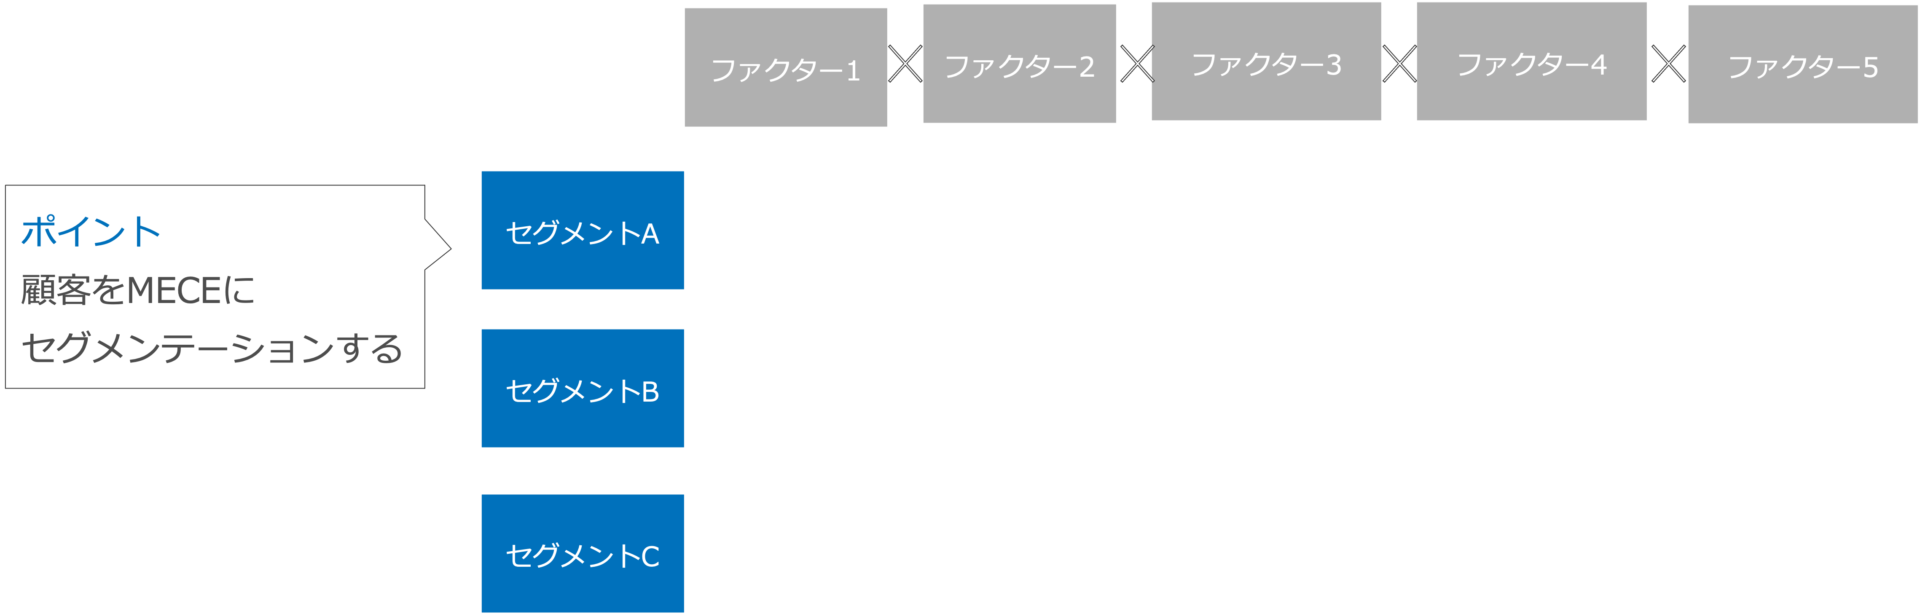 フェルミ推定におけるセグメンテーションのイメージ図